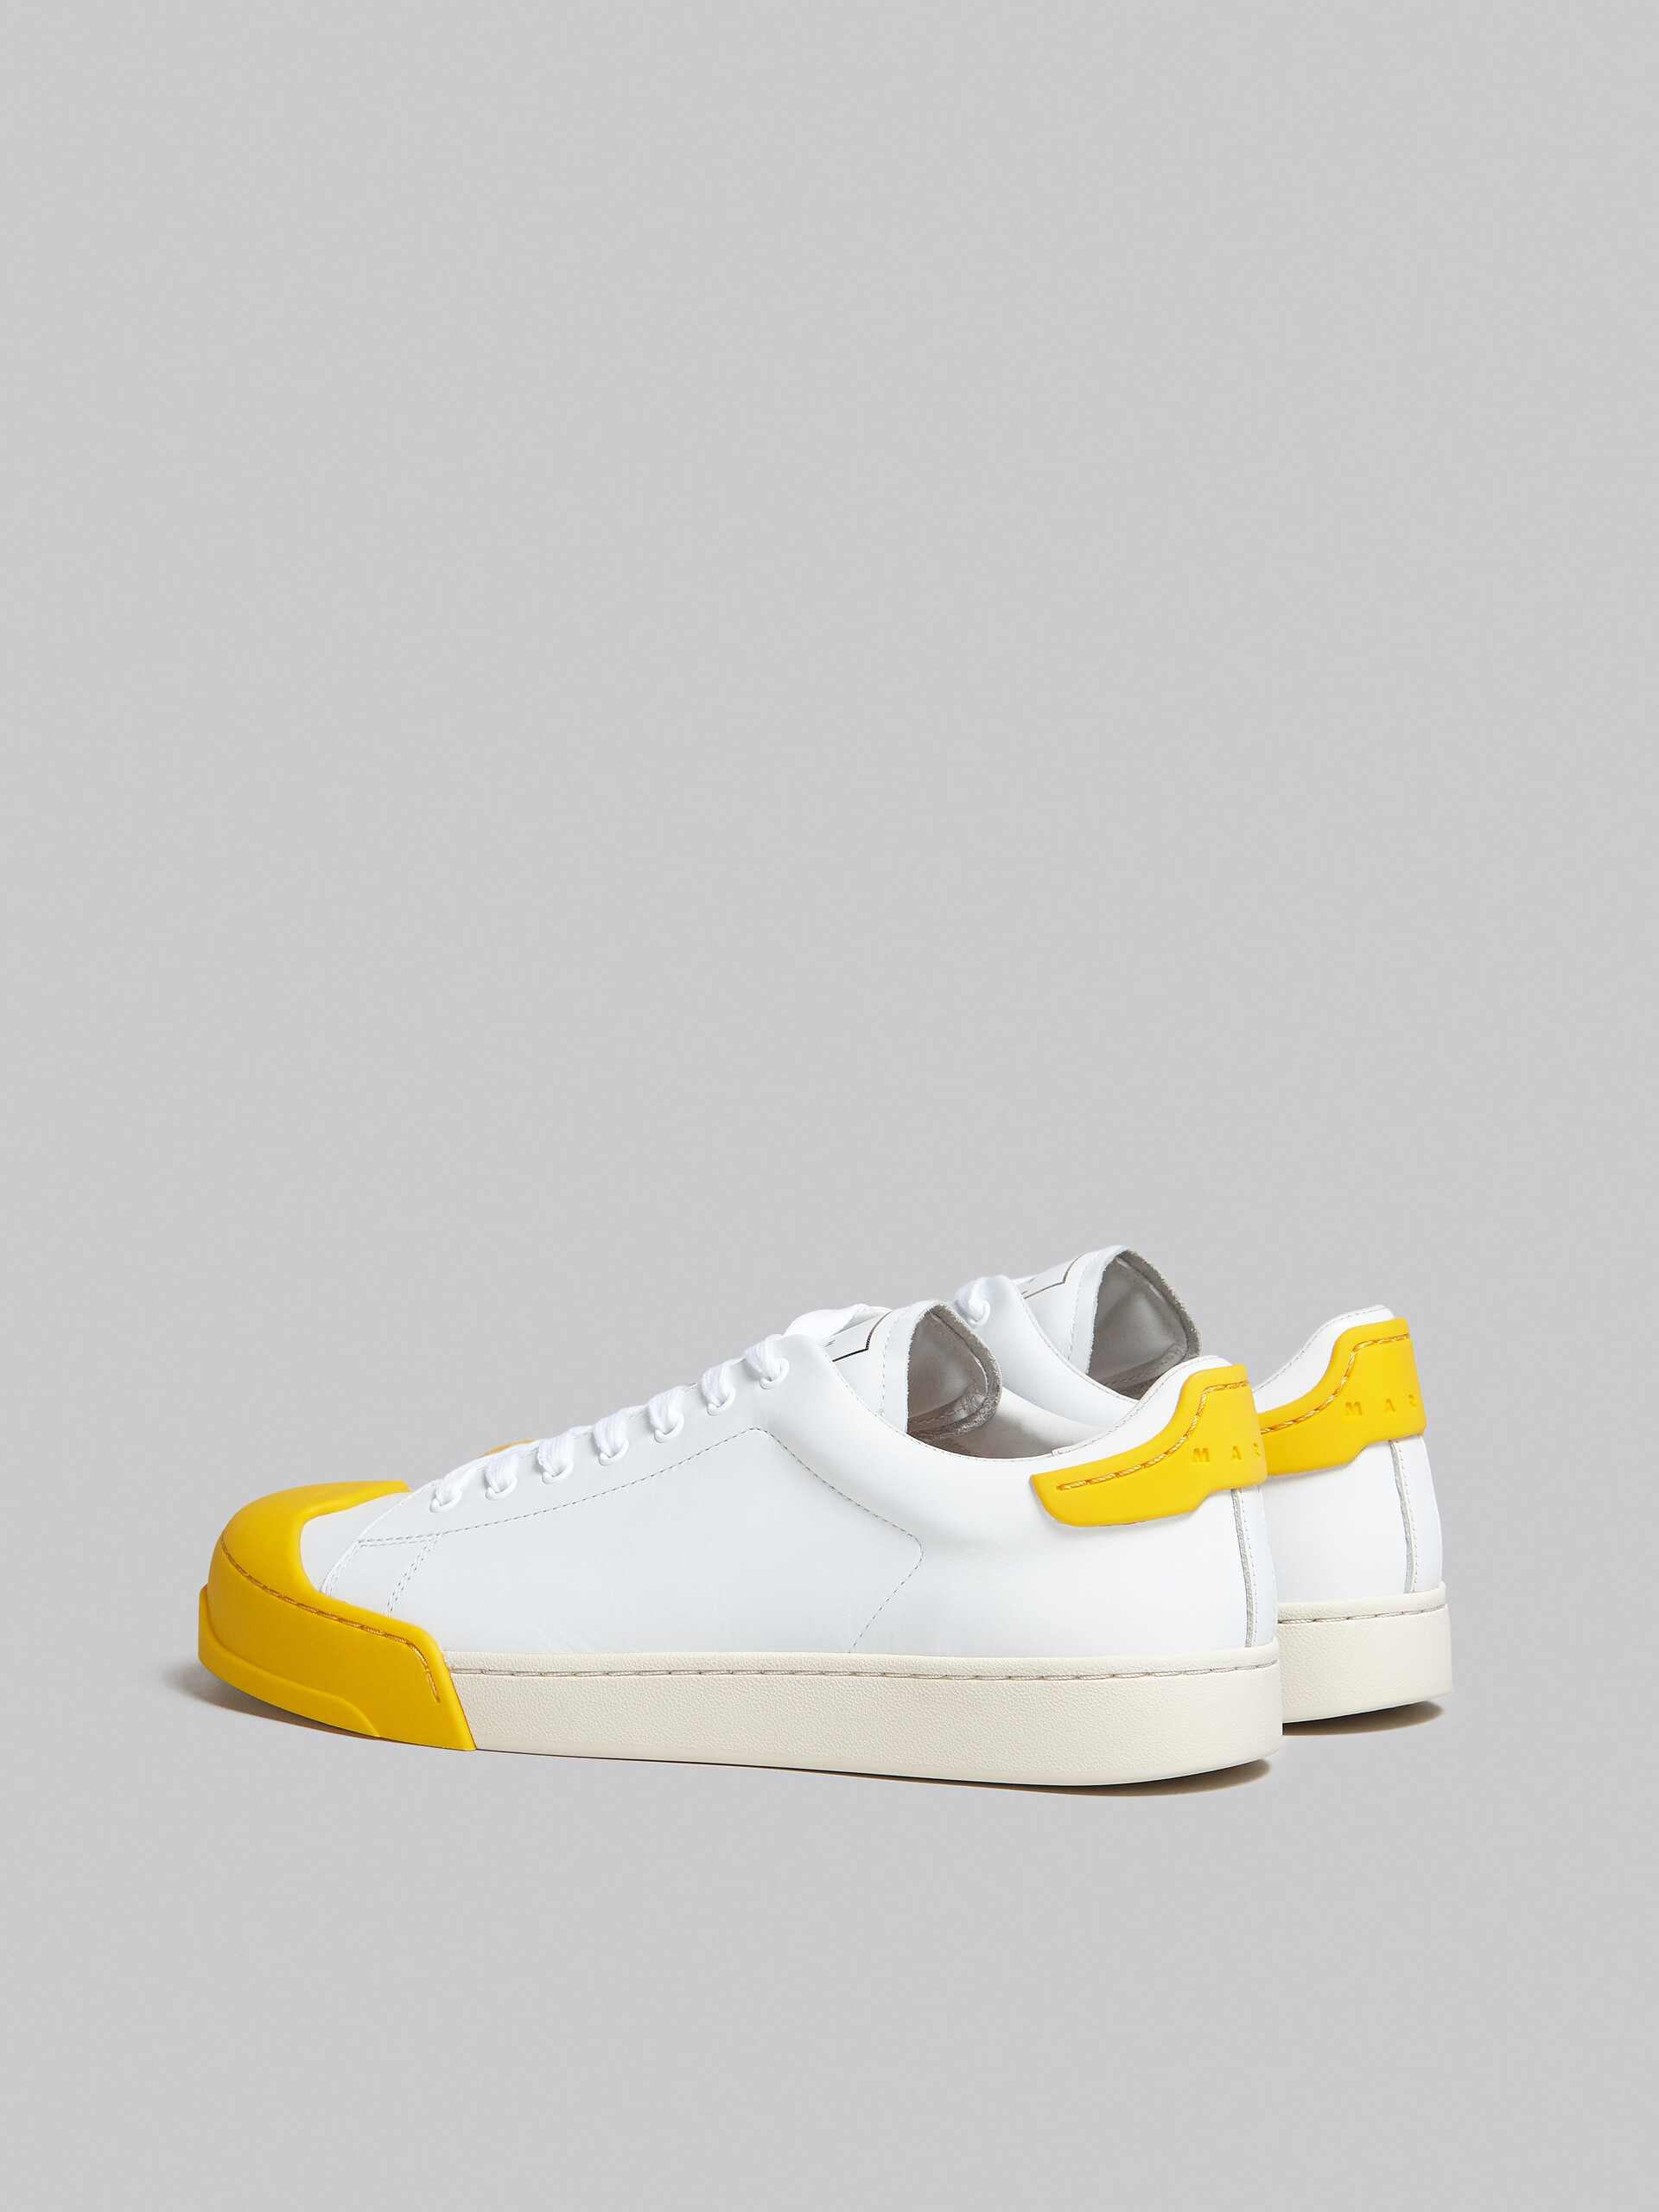 Sneaker Dada Bumper in pelle bianca e gialla - Sneakers - Image 3